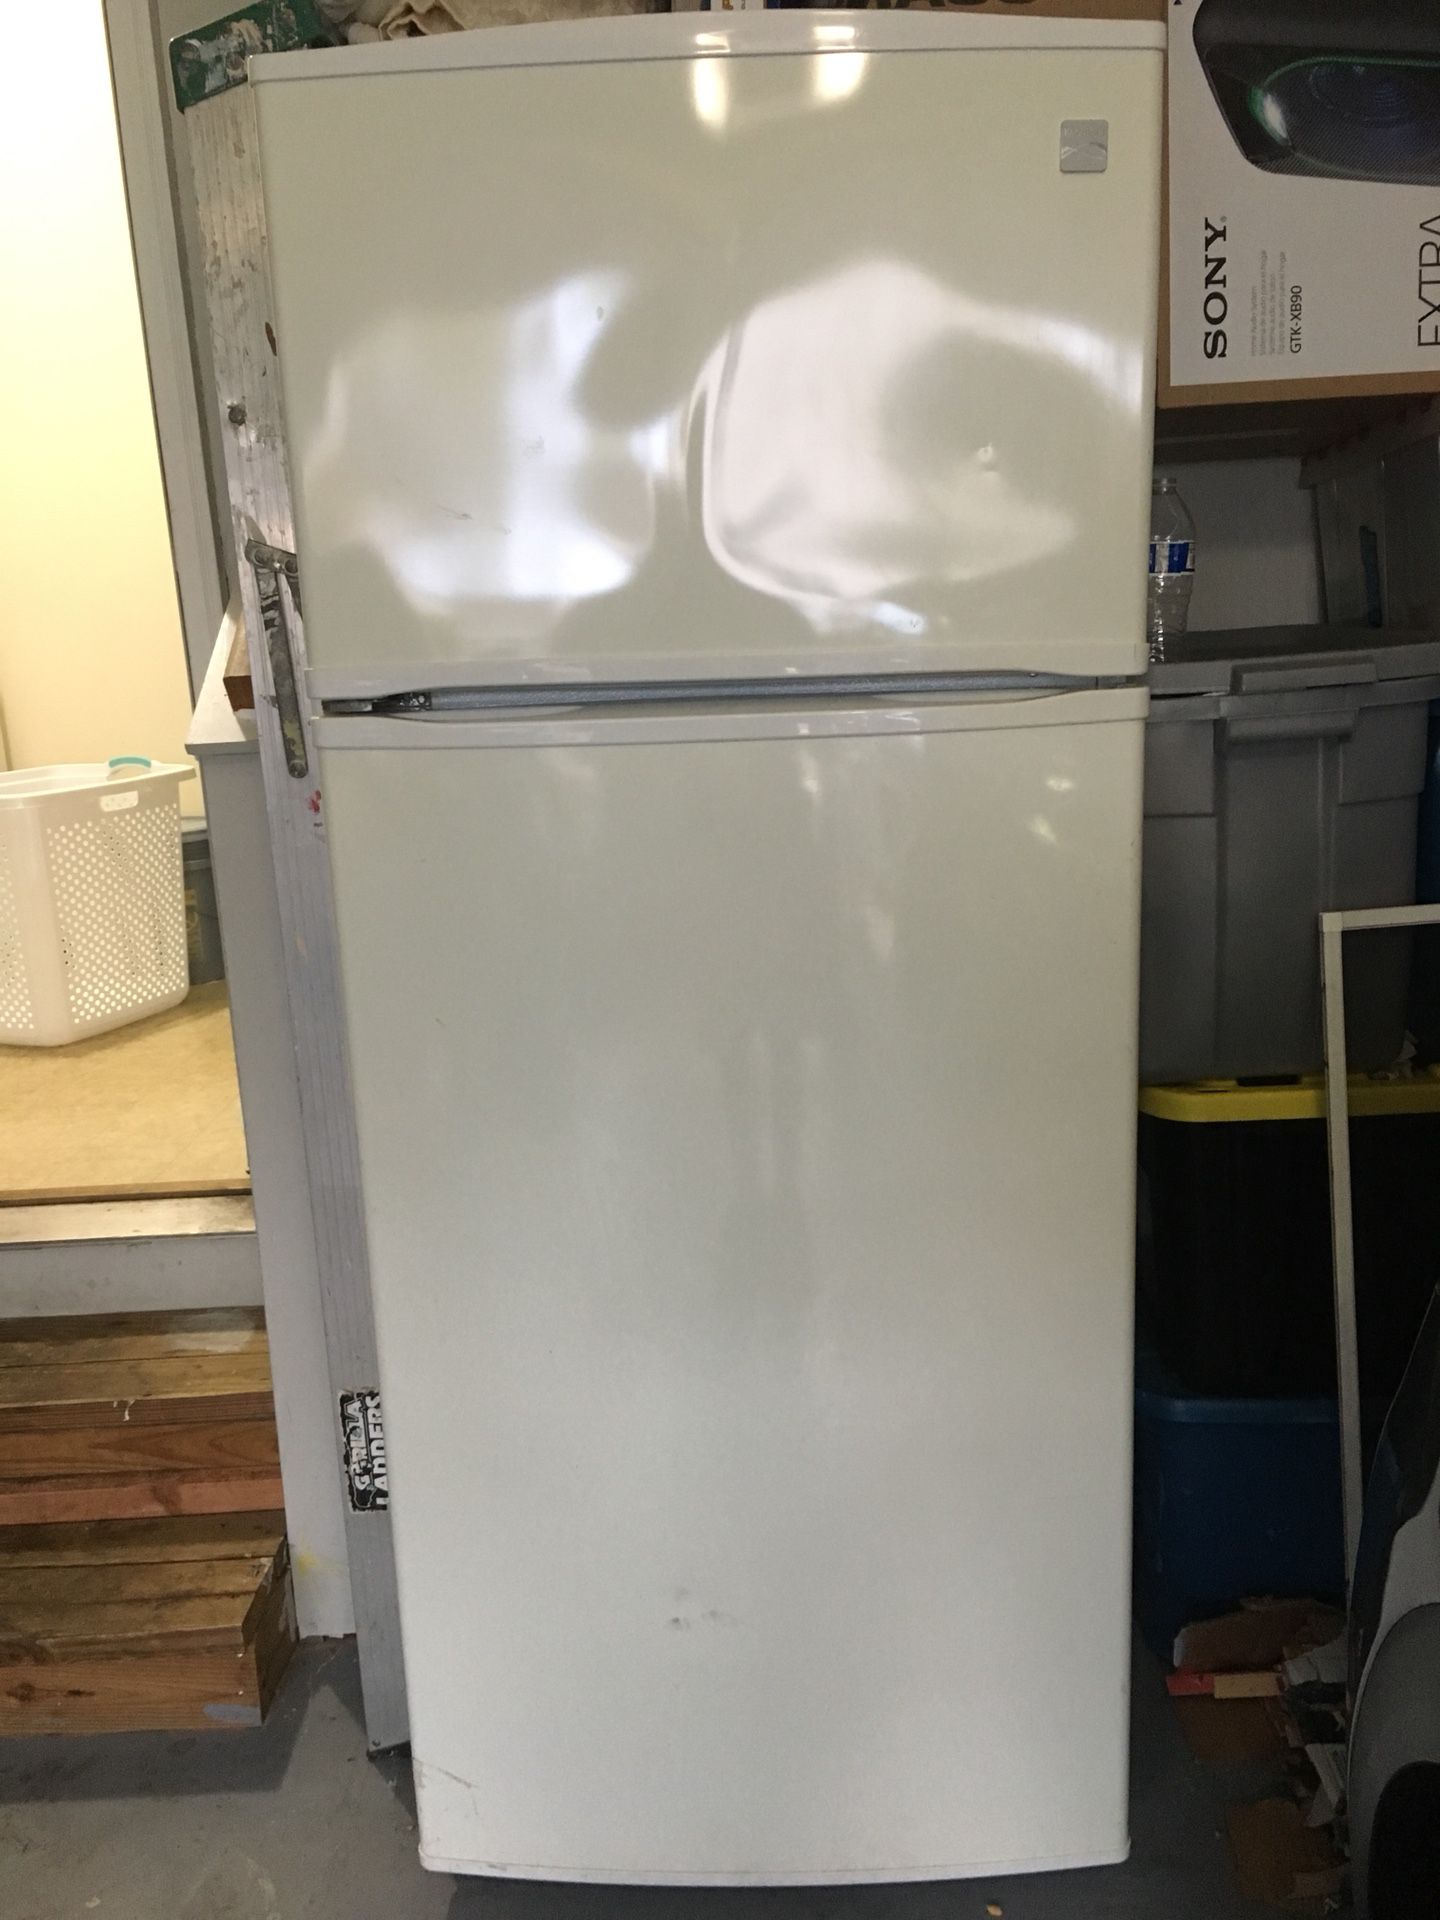 Ken Refrigerator